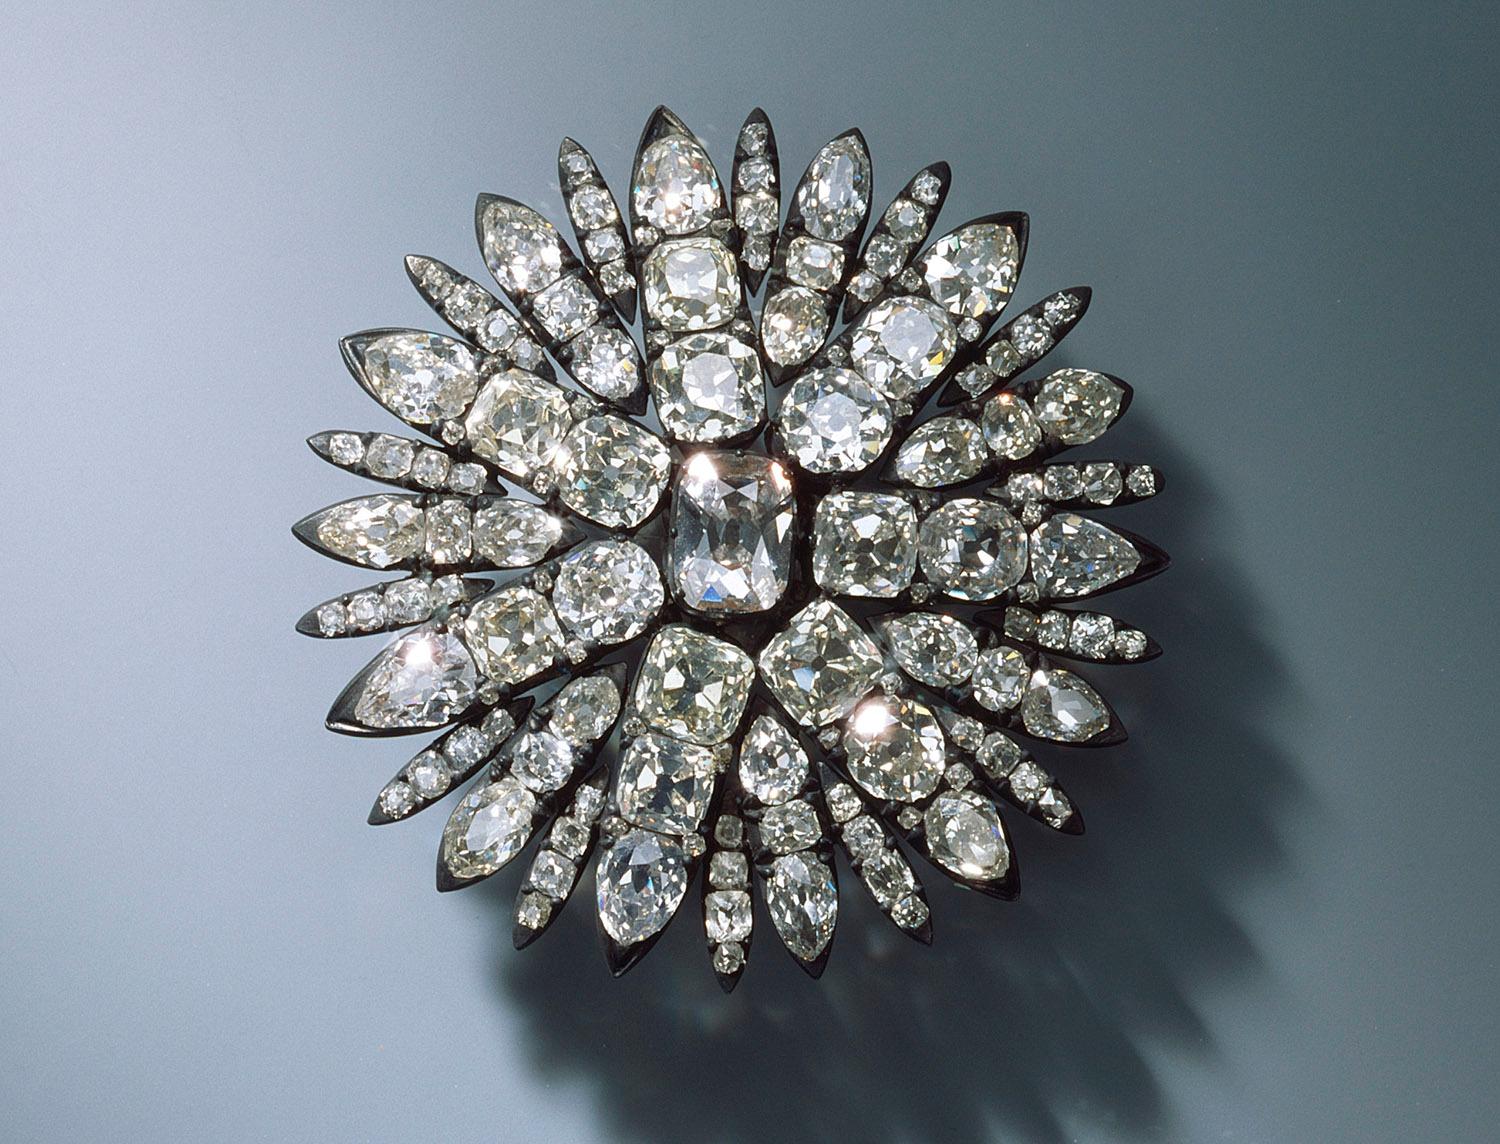 Tjuver stjal verdifulle diamanter fra museum